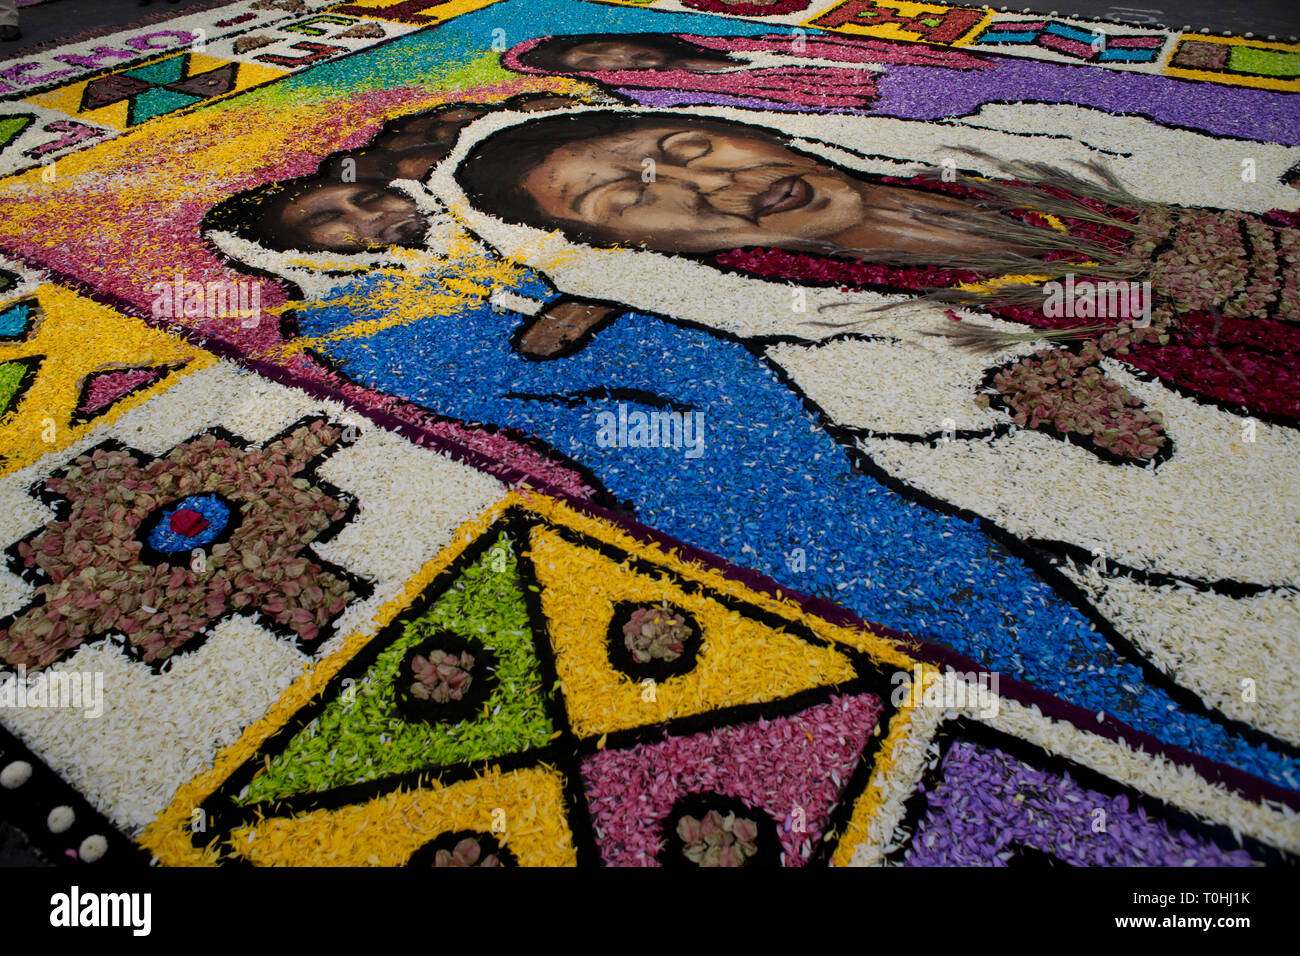 Heilige Woche Surco Blütenteppich, Lima, Peru, 2015. Schöpfer: Luis Rosendo. Stockfoto